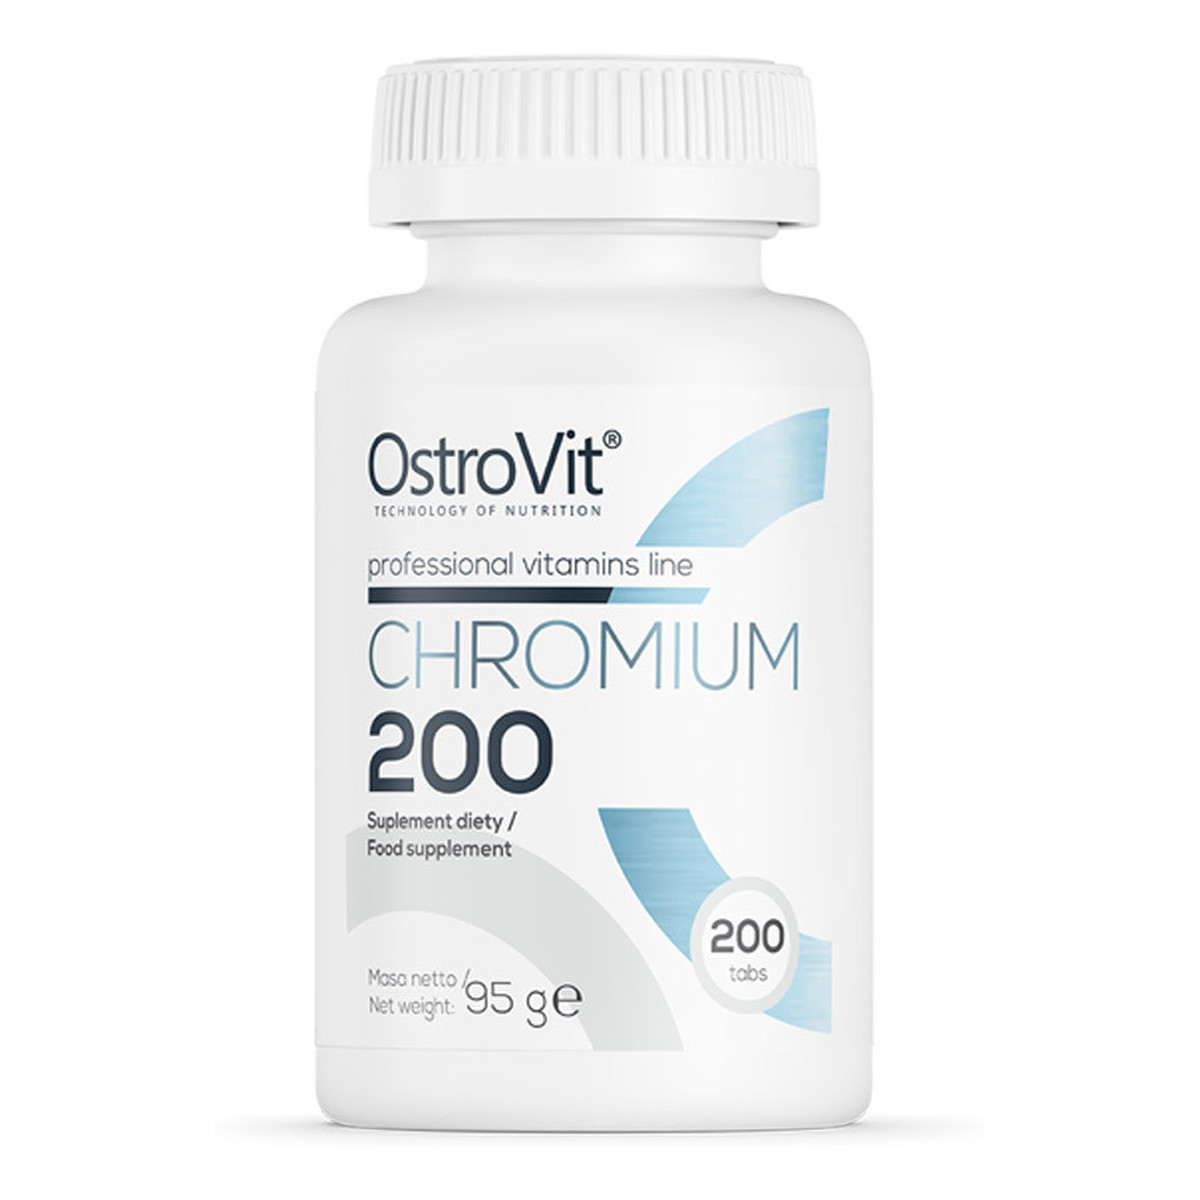 OstroVit CHROMIUM Chrom 200mg 200 tabletek